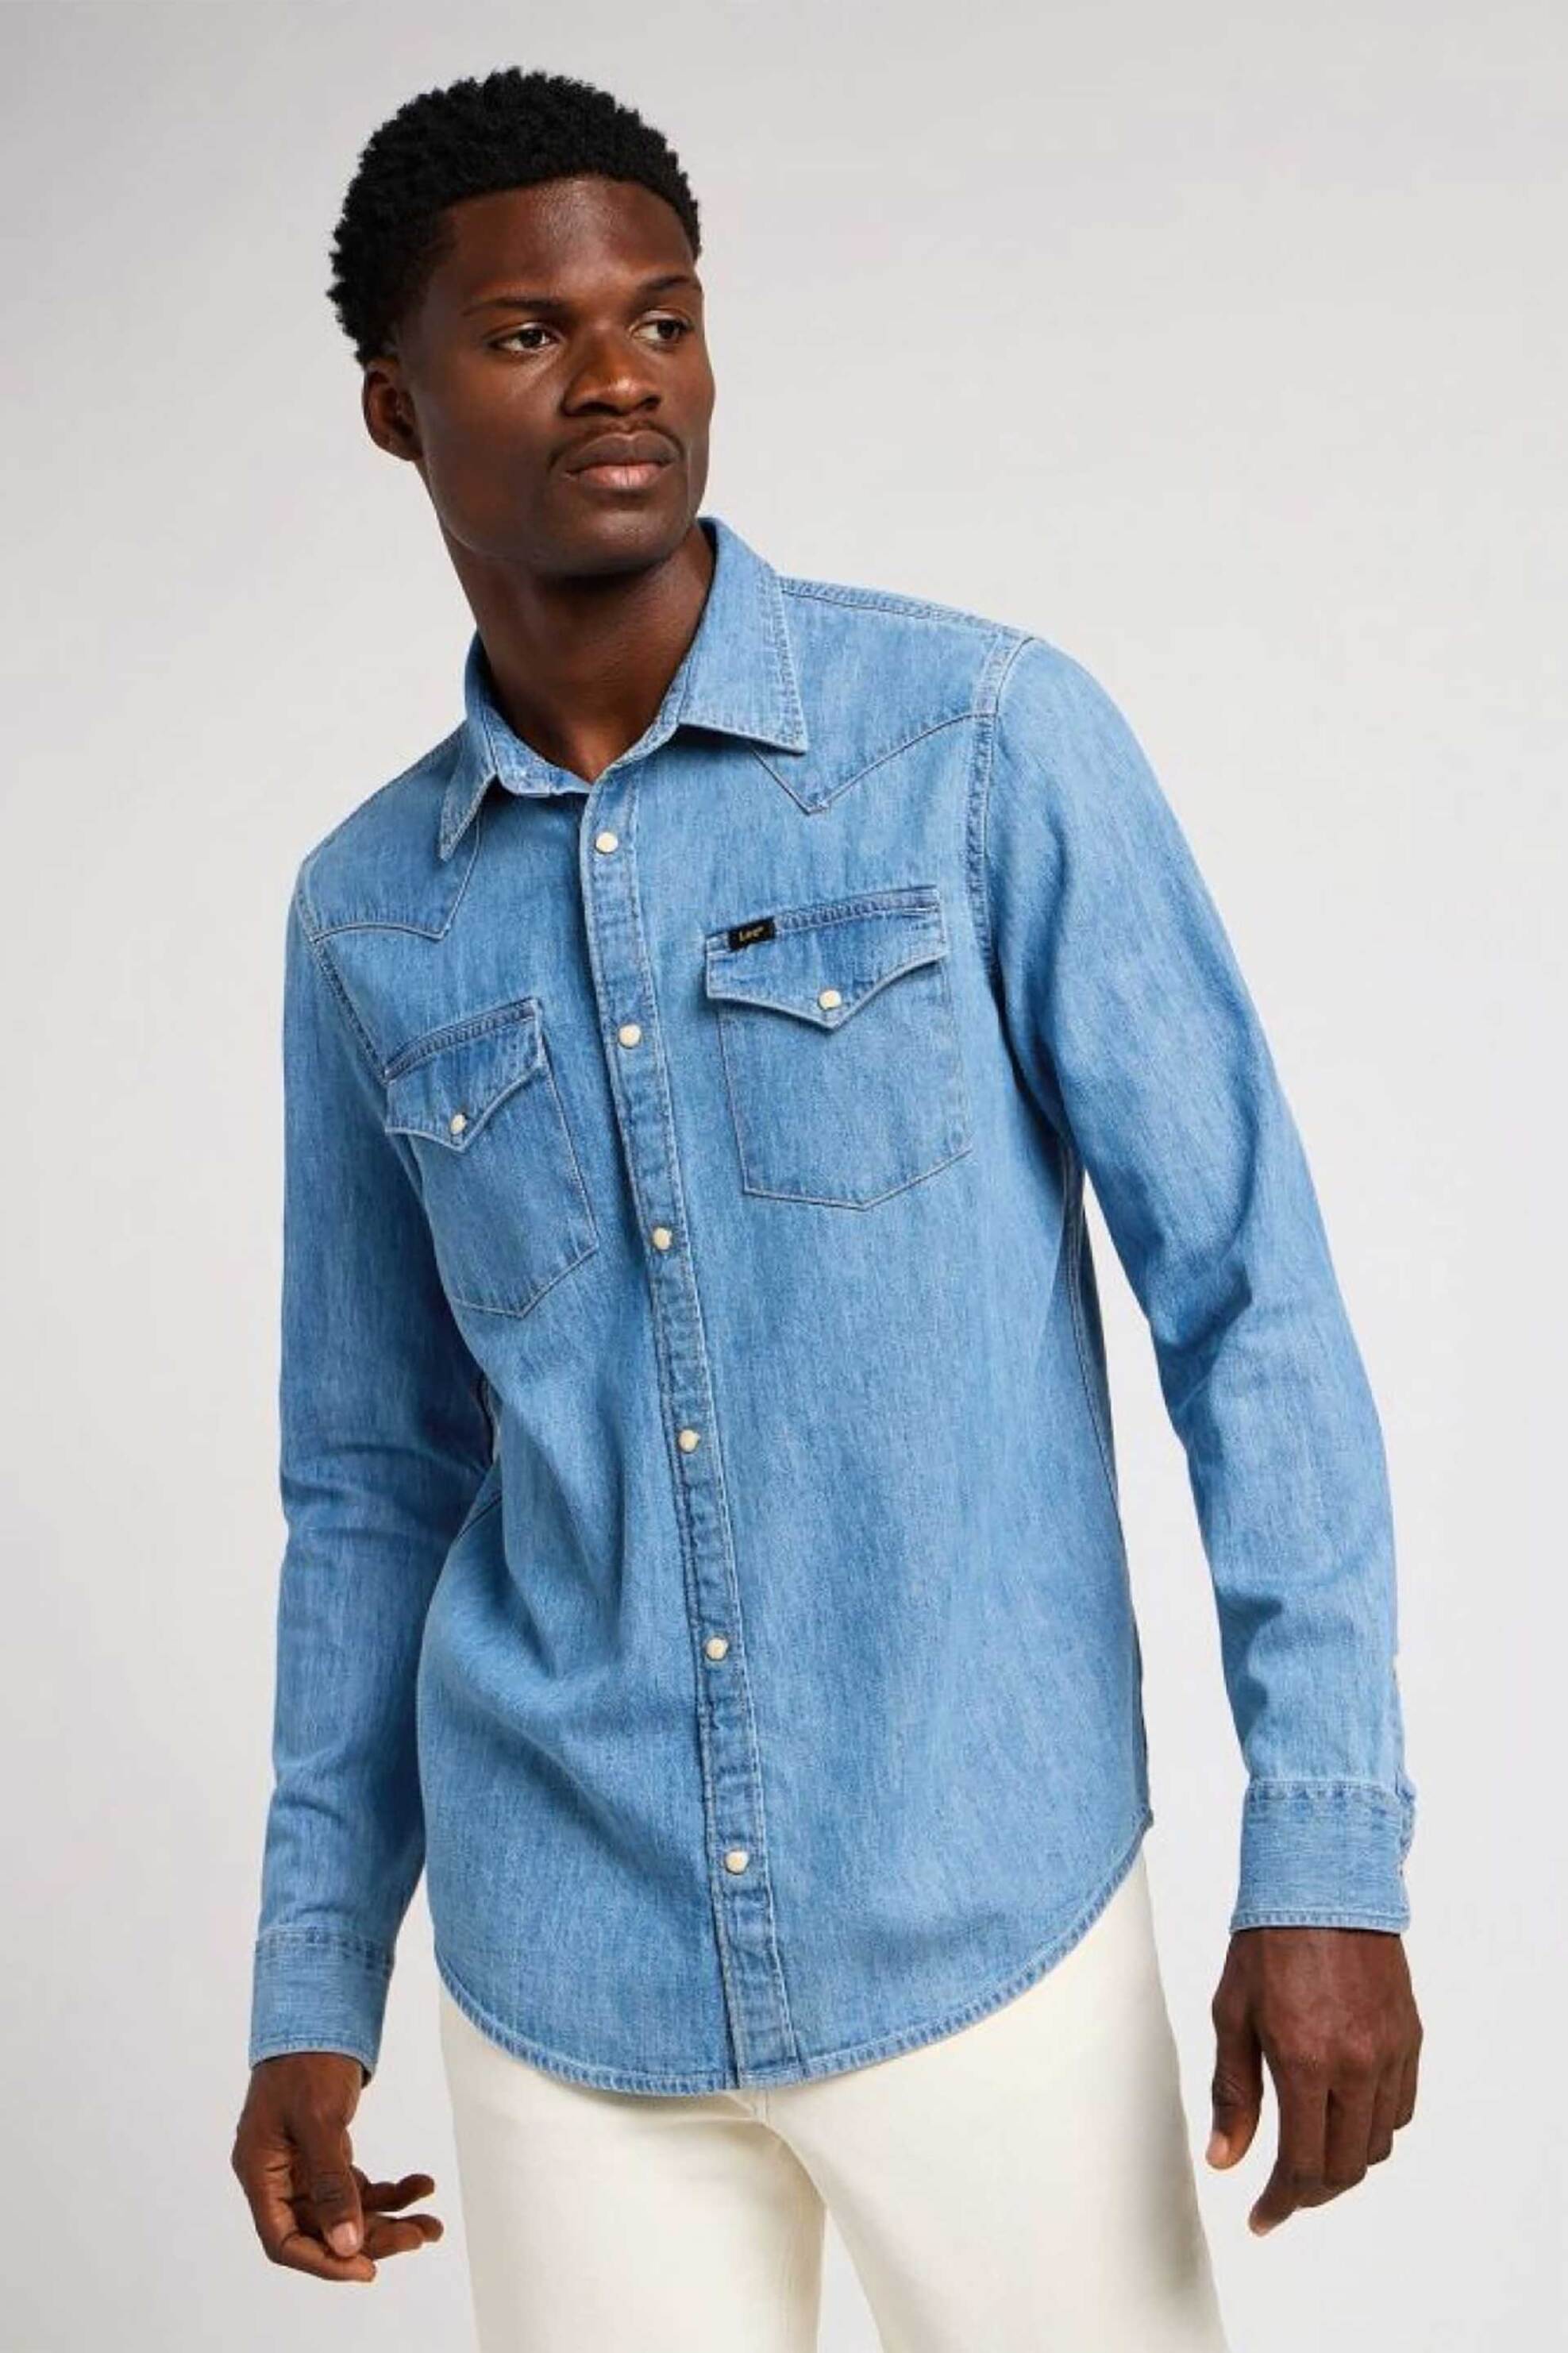 Ανδρική Μόδα > Ανδρικά Ρούχα > Ανδρικά Πουκάμισα > Ανδρικά Πουκάμισα Casual Lee® ανδρικό denim πουκάμισο με τσέπες "Regular Western" - 112349983 Denim Blue Ανοιχτό